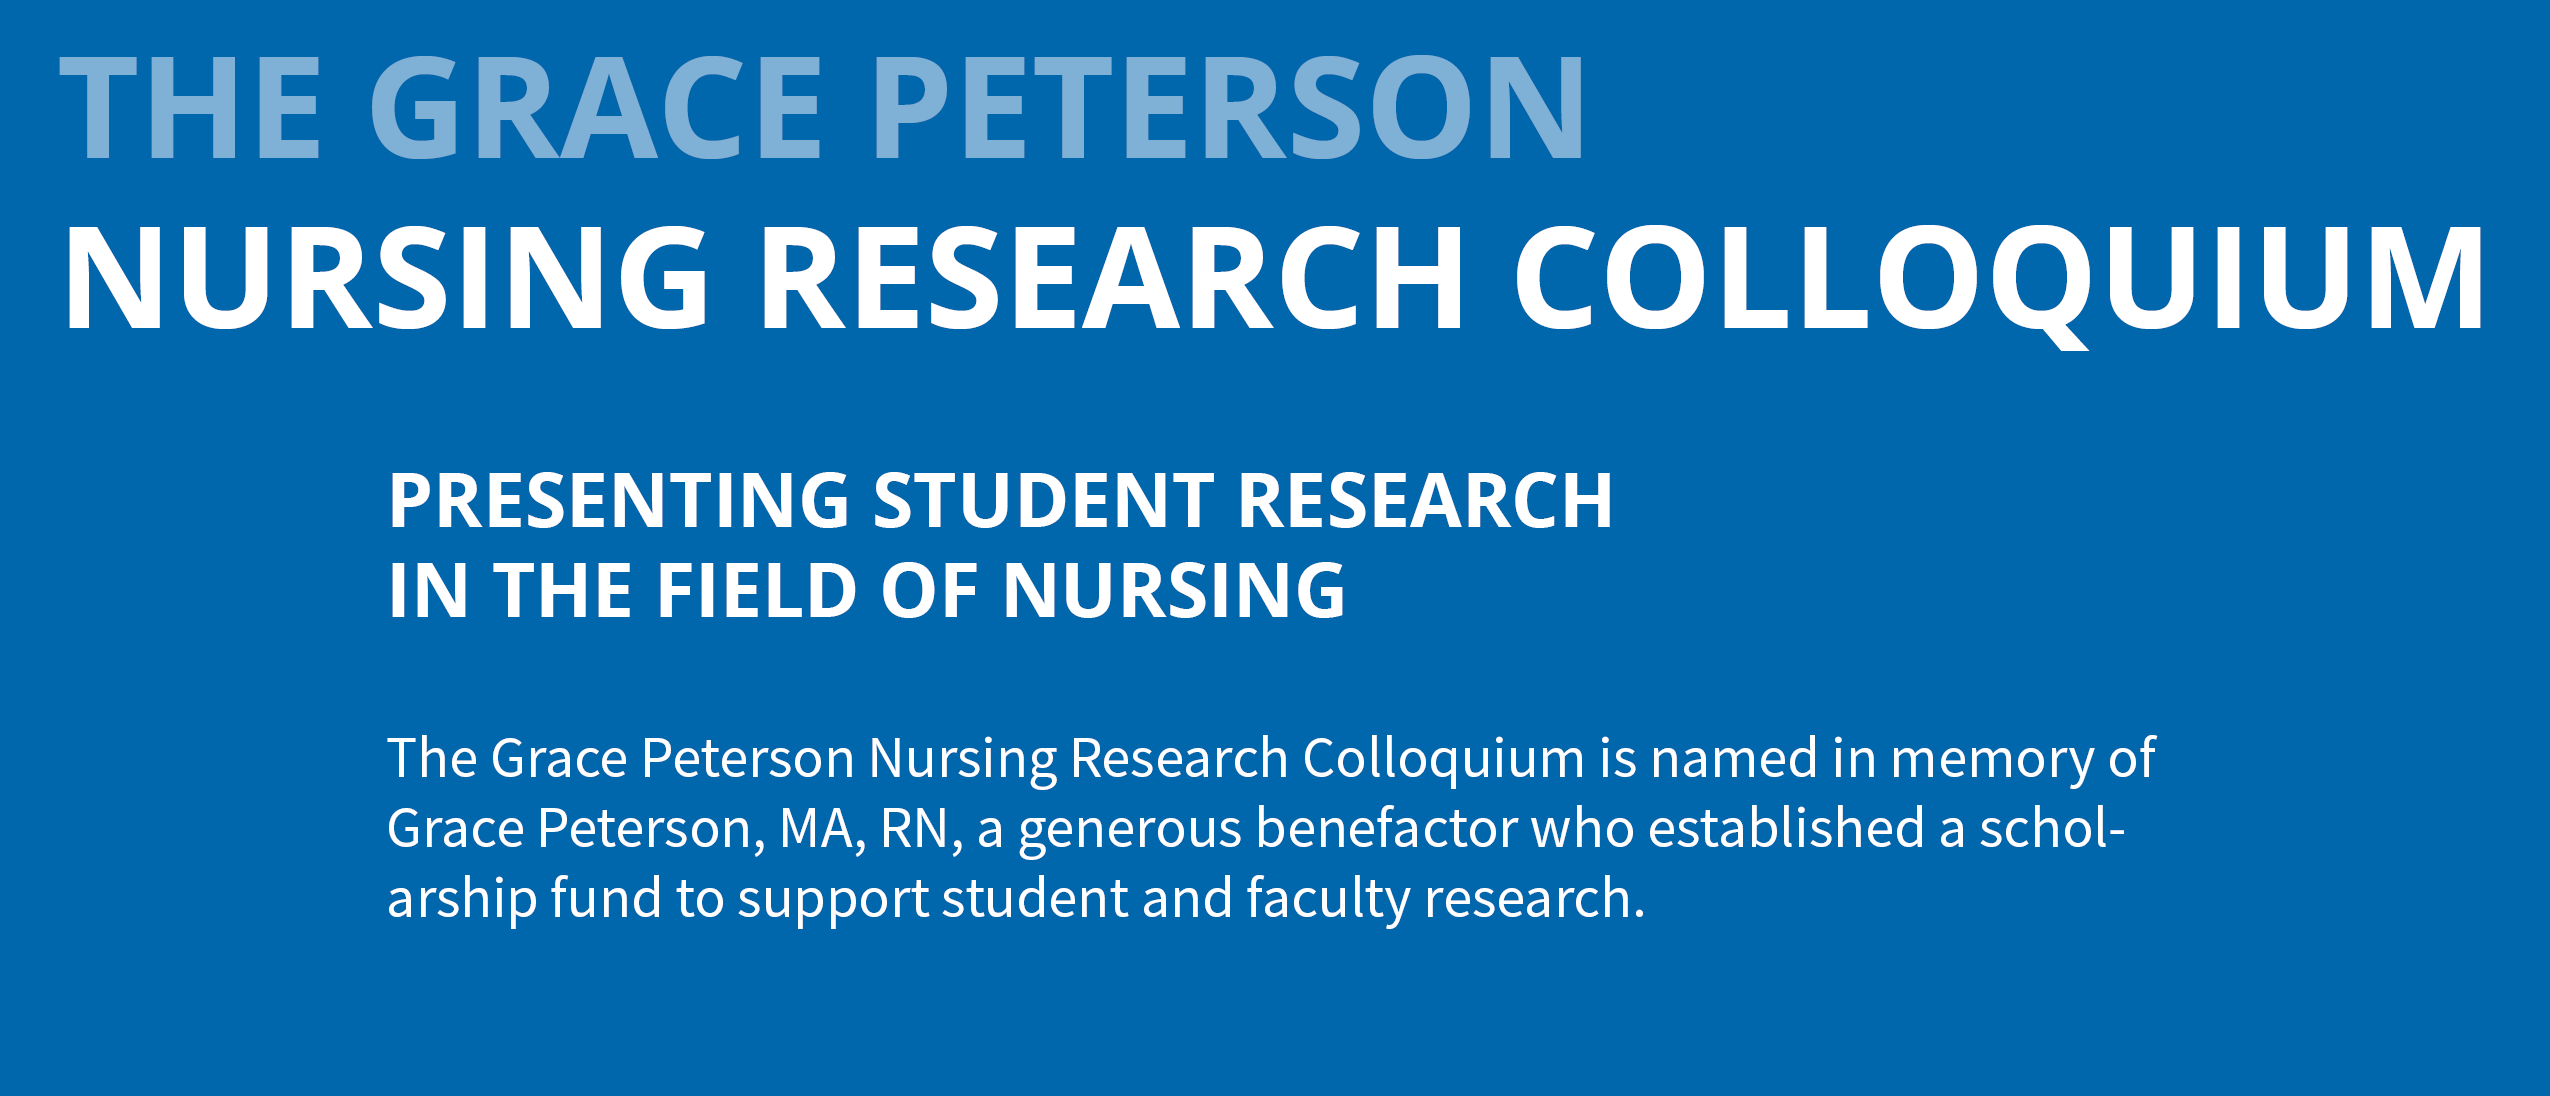 Grace Peterson Nursing Research Colloquium